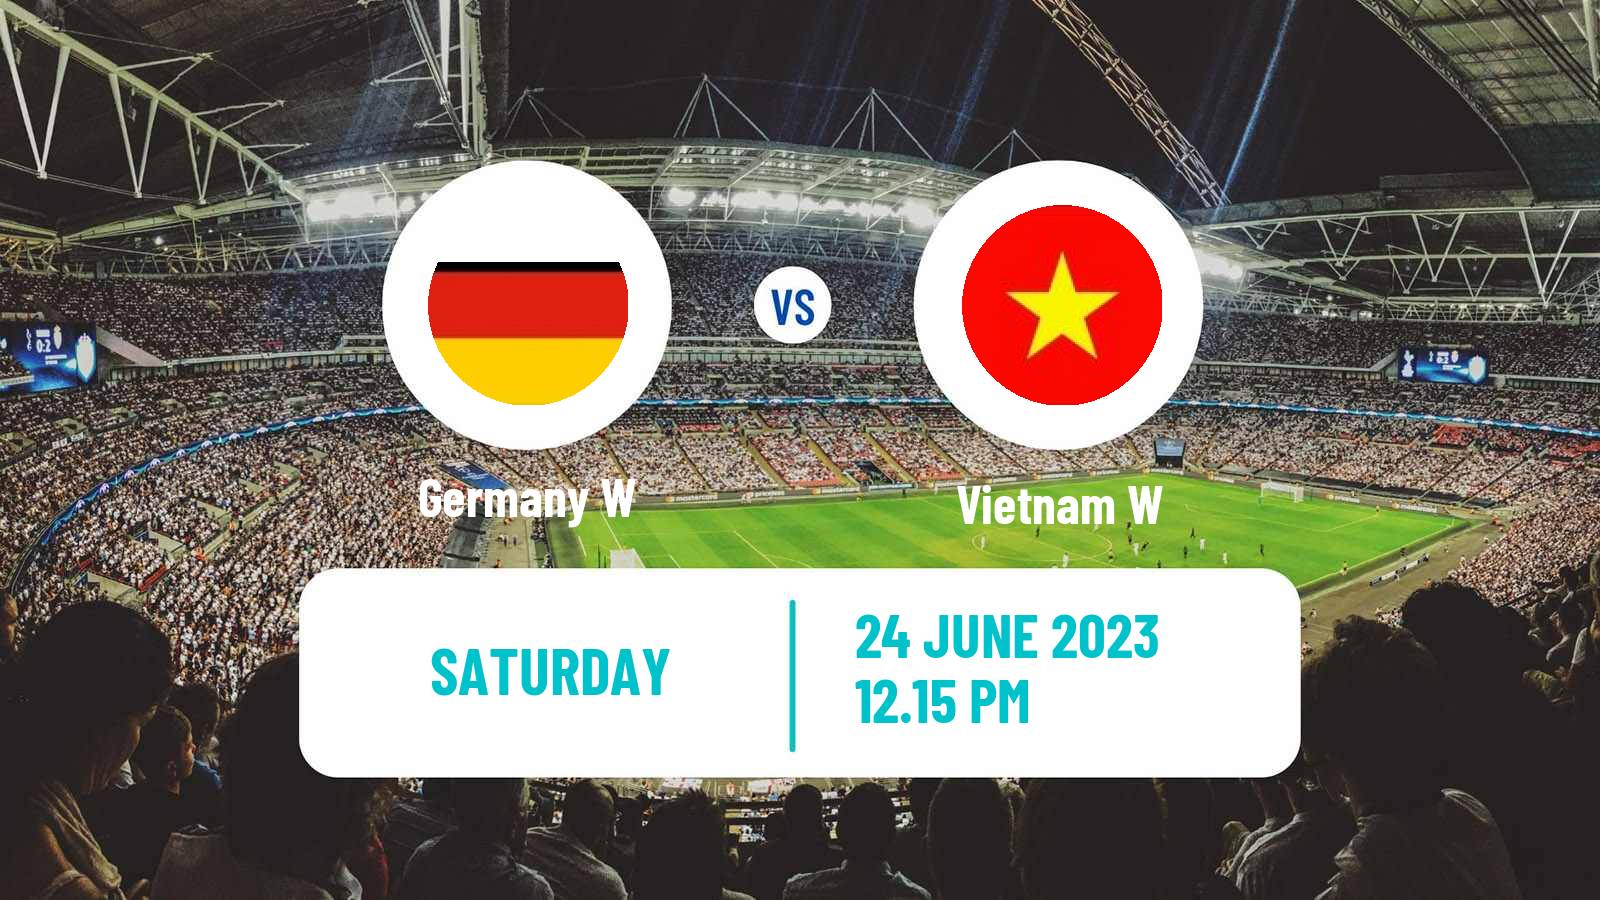 Soccer Friendly International Women Germany W - Vietnam W